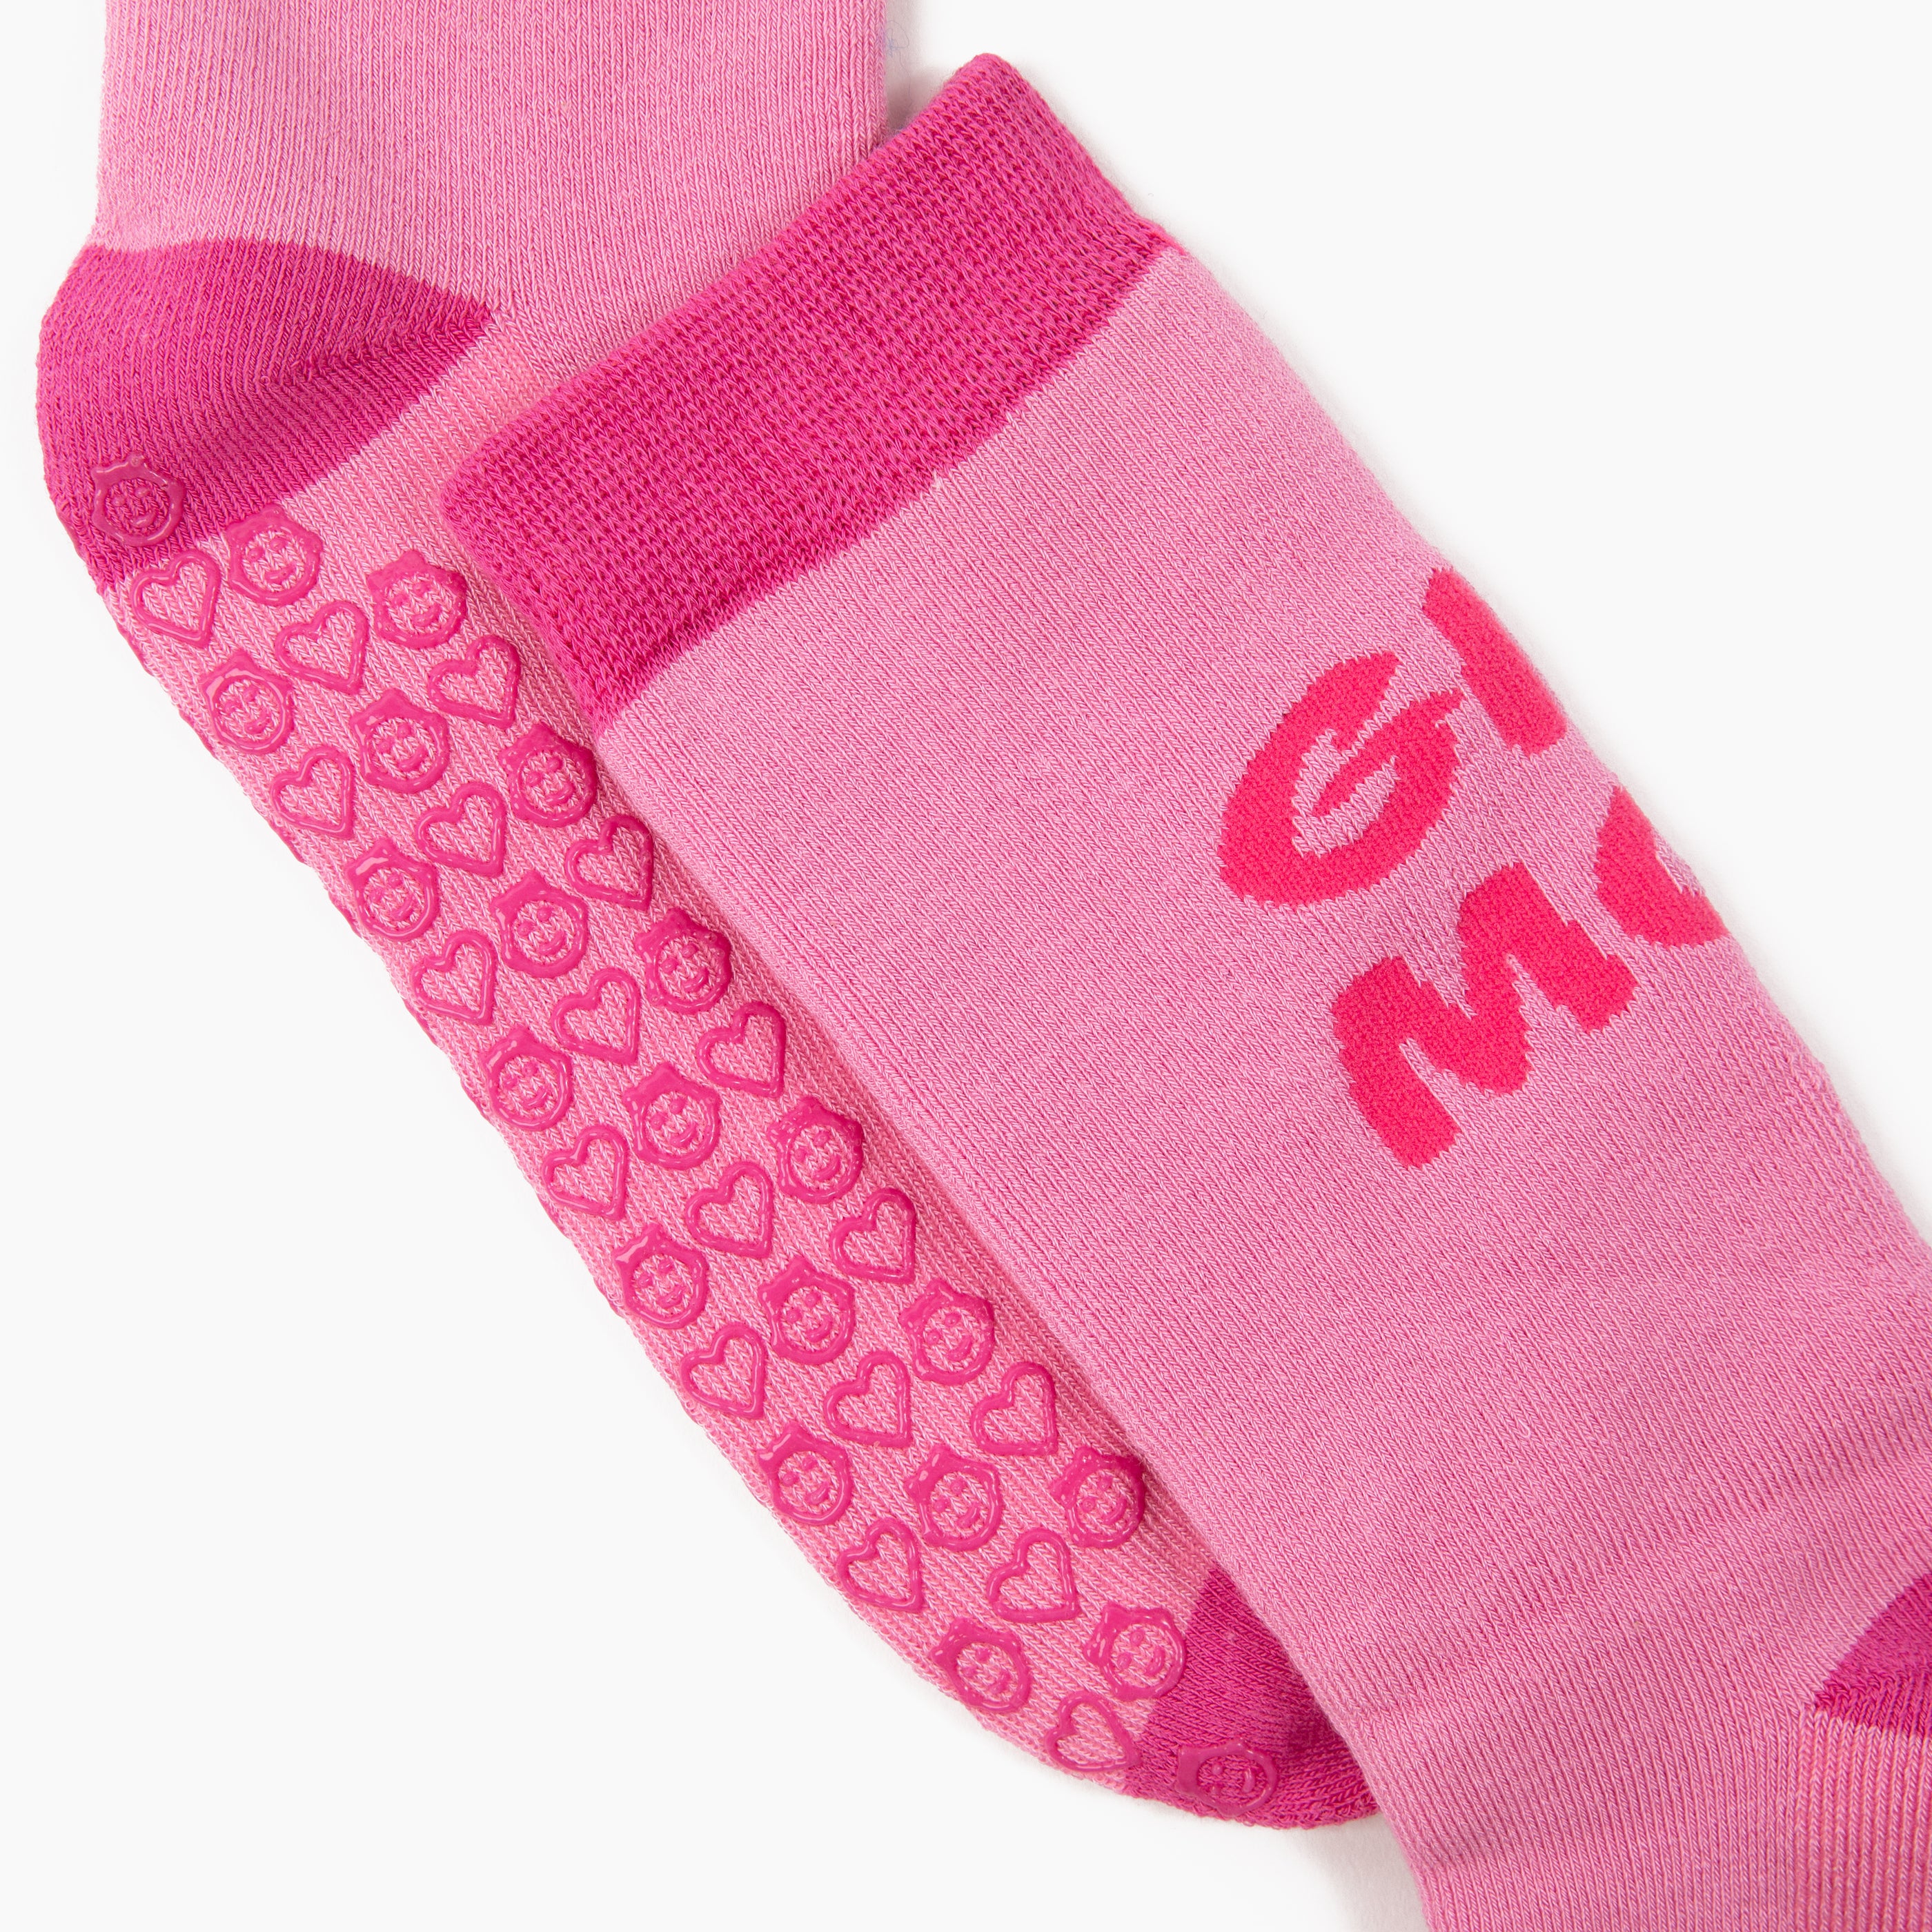 Girl Mom Grip Socks For New Moms – Dr. Socko